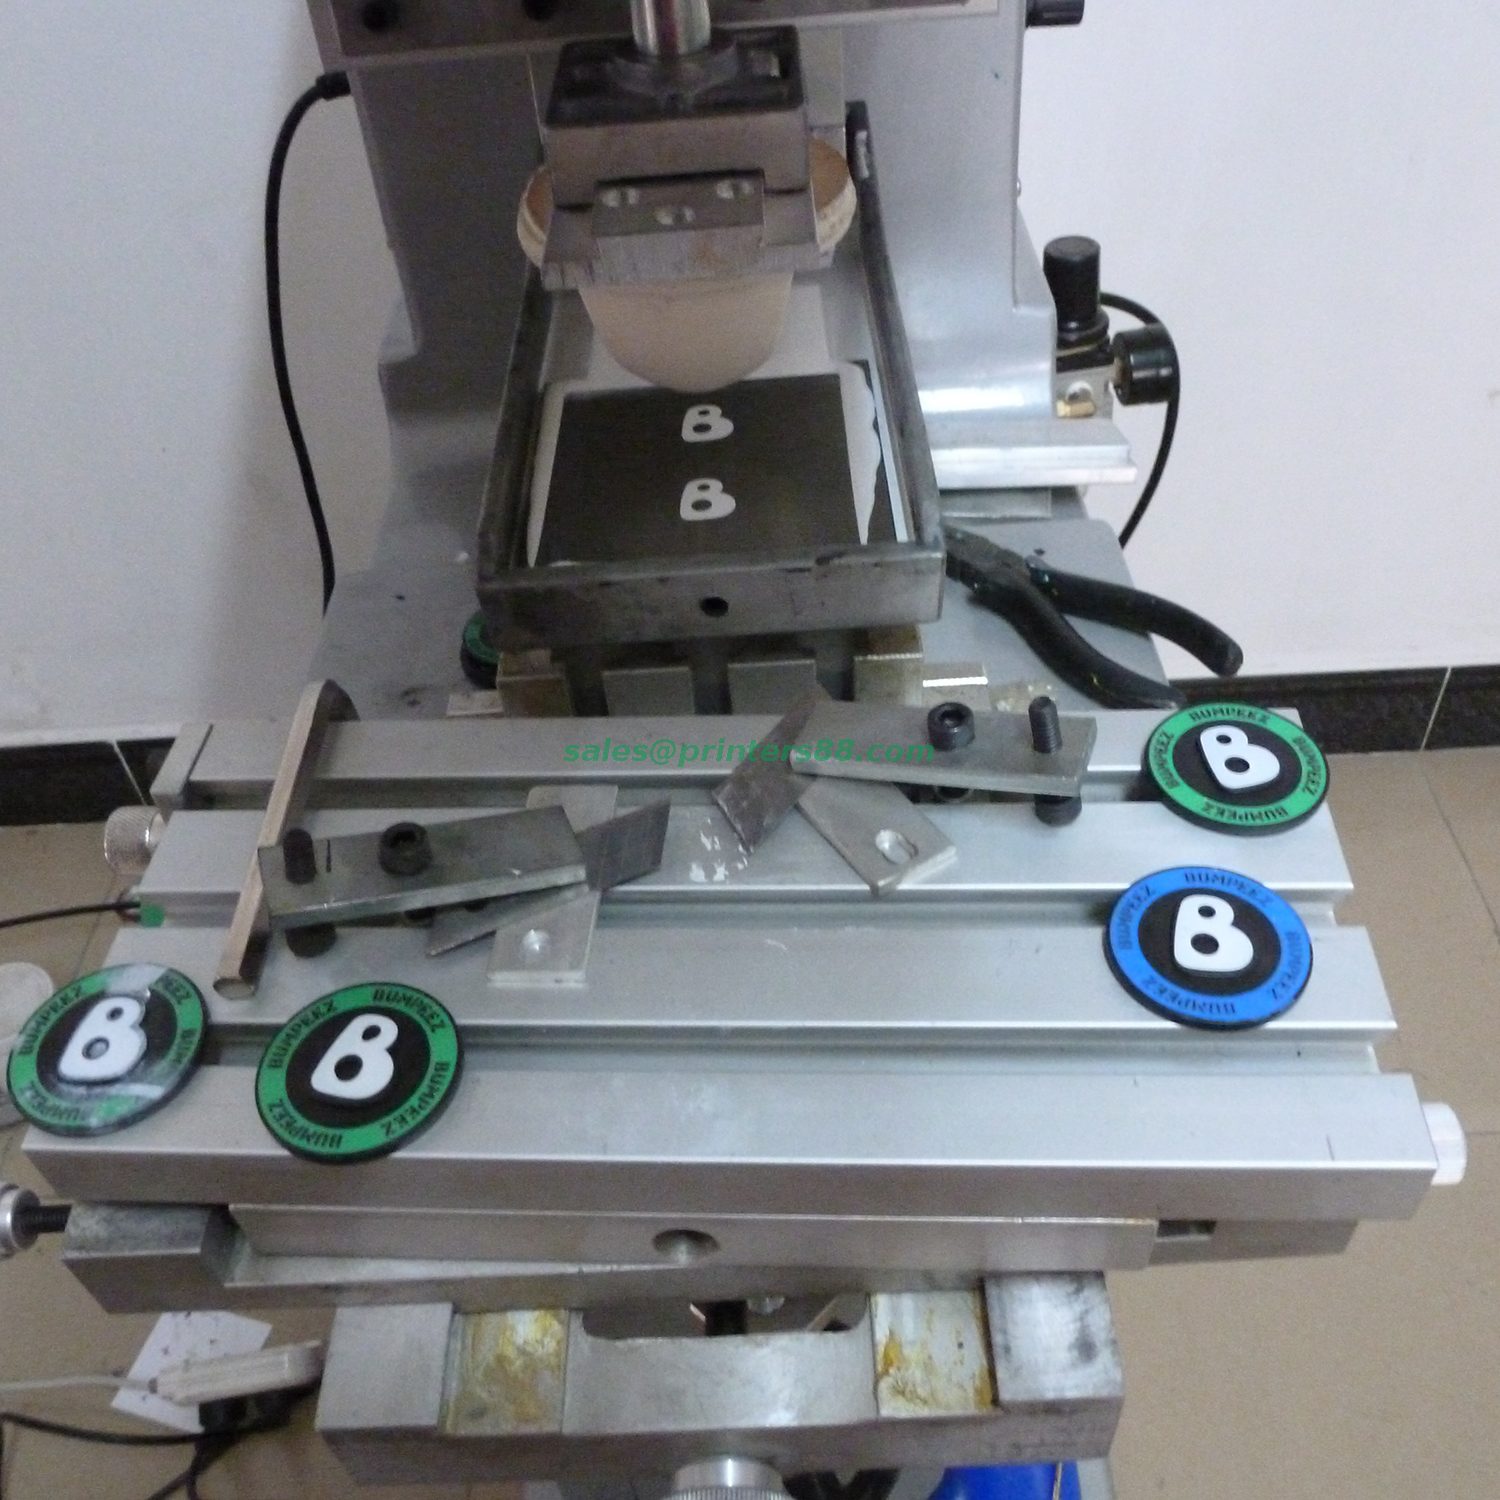 Impresora tampográfica de un solo color (P1)